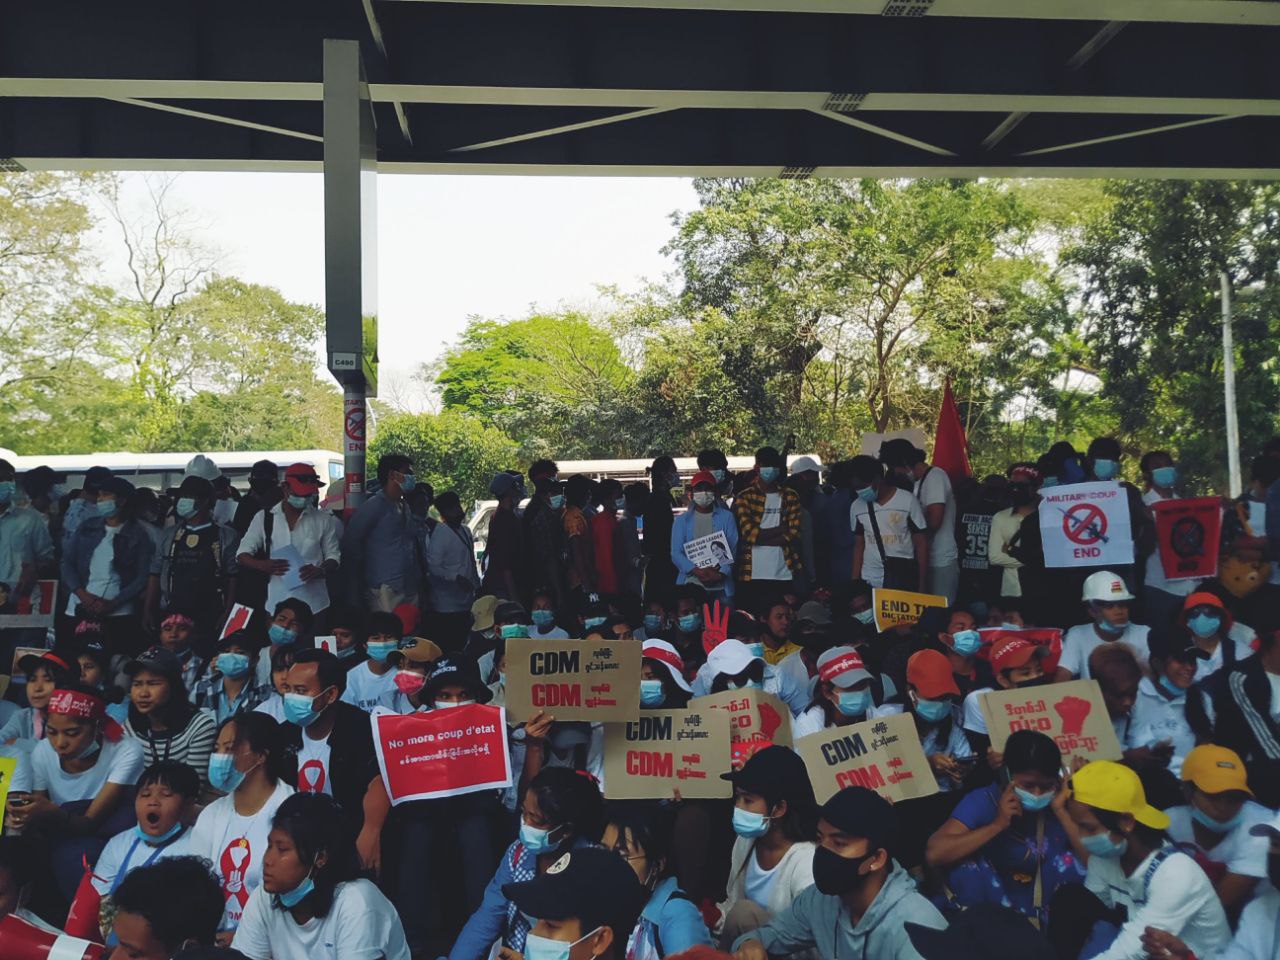 大學線 CDM示威者大多為年青人，他們舉起標語，進行和平抗議